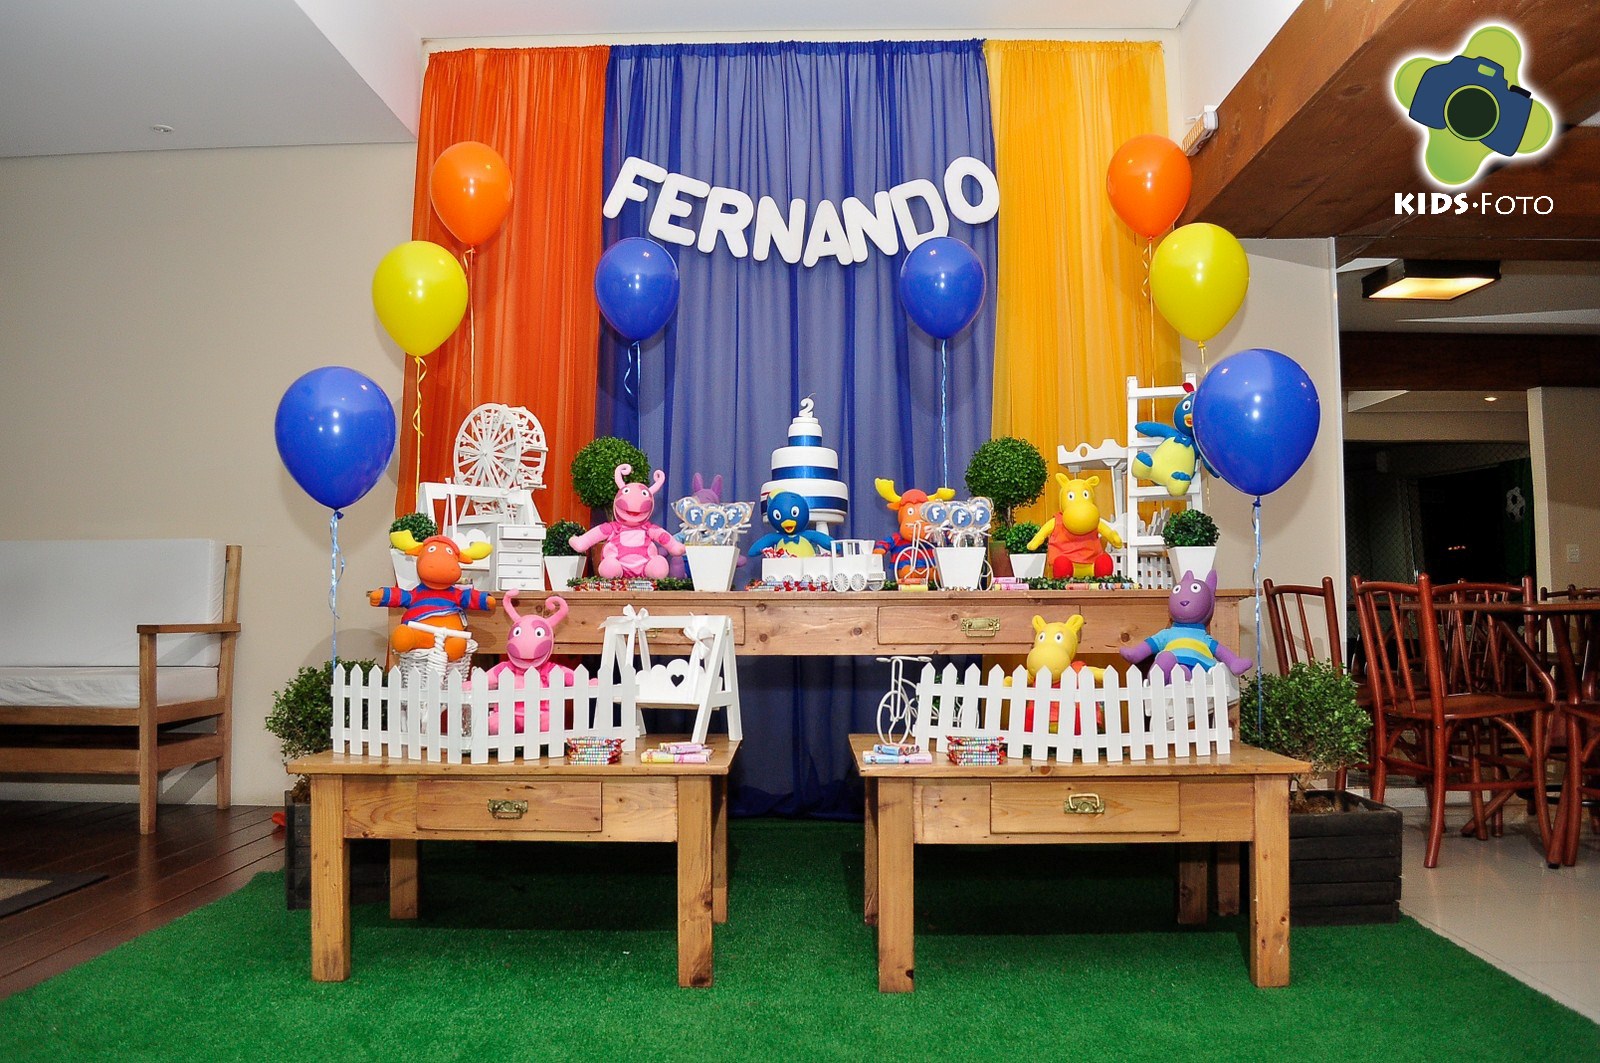 Festa de aniversário de 2 anos do Fernando, realizada na Kids Choise, por Kids Foto